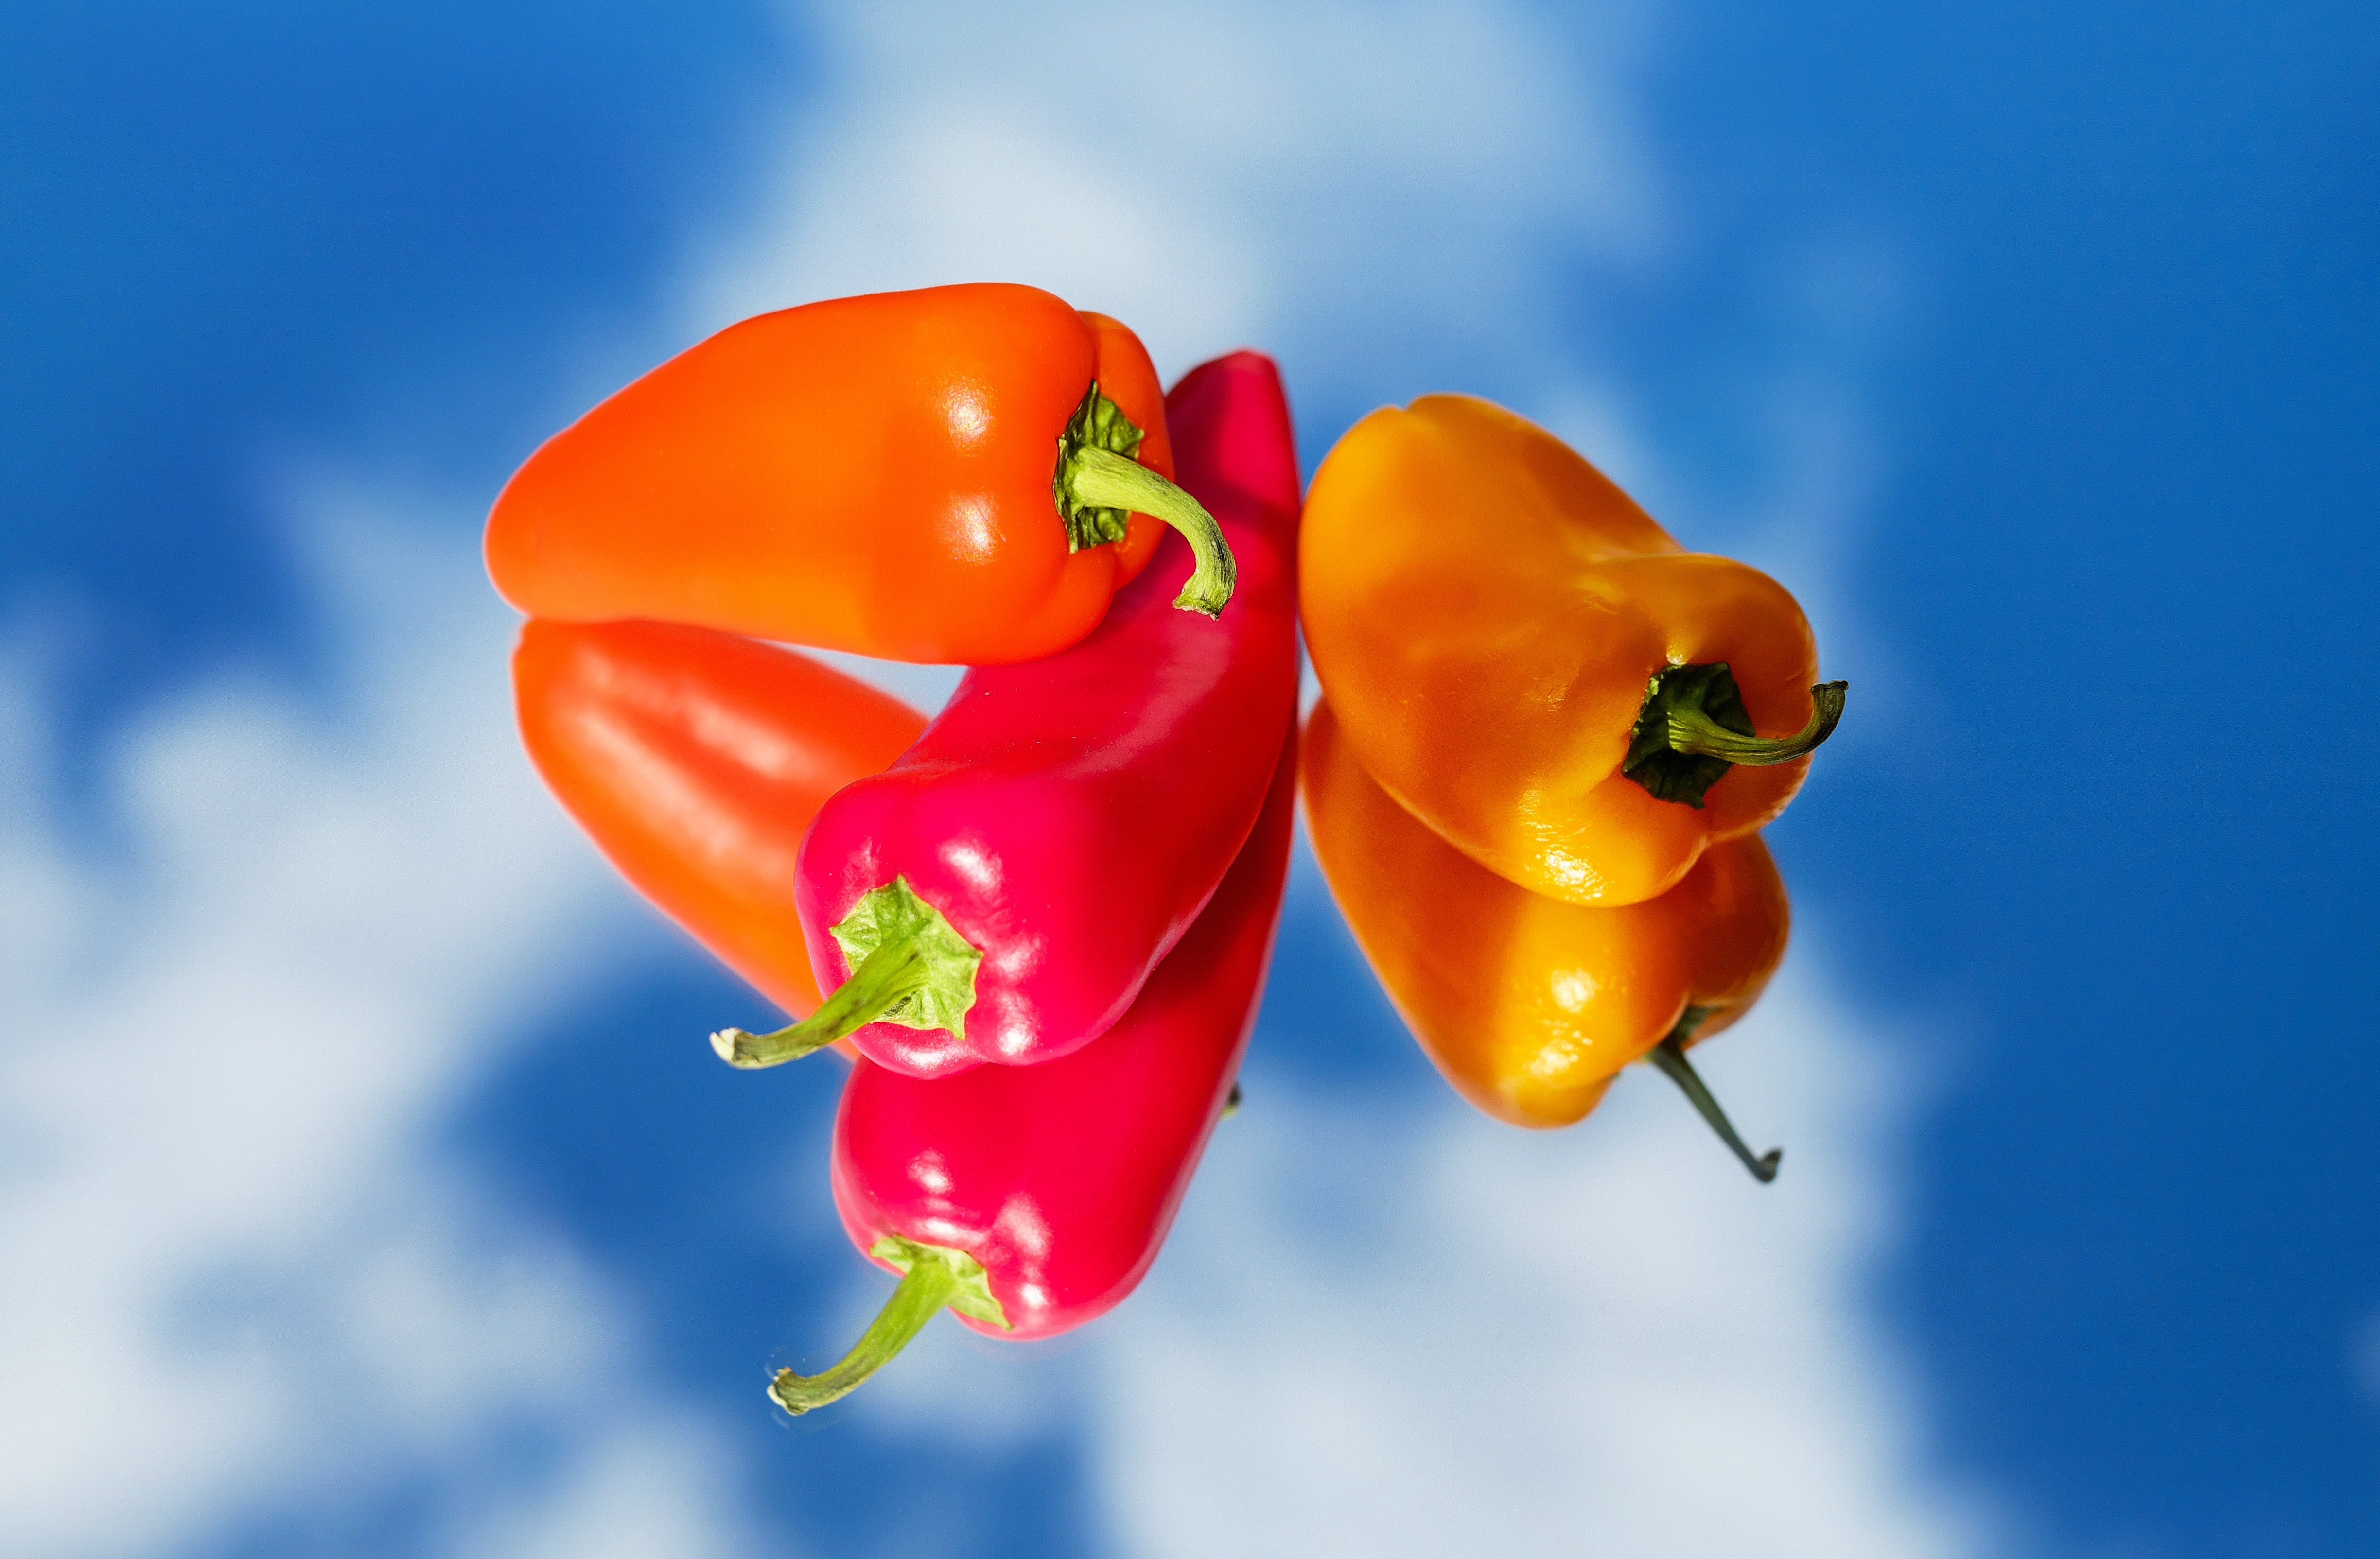 Red hot chili pepper near orange pepper photo